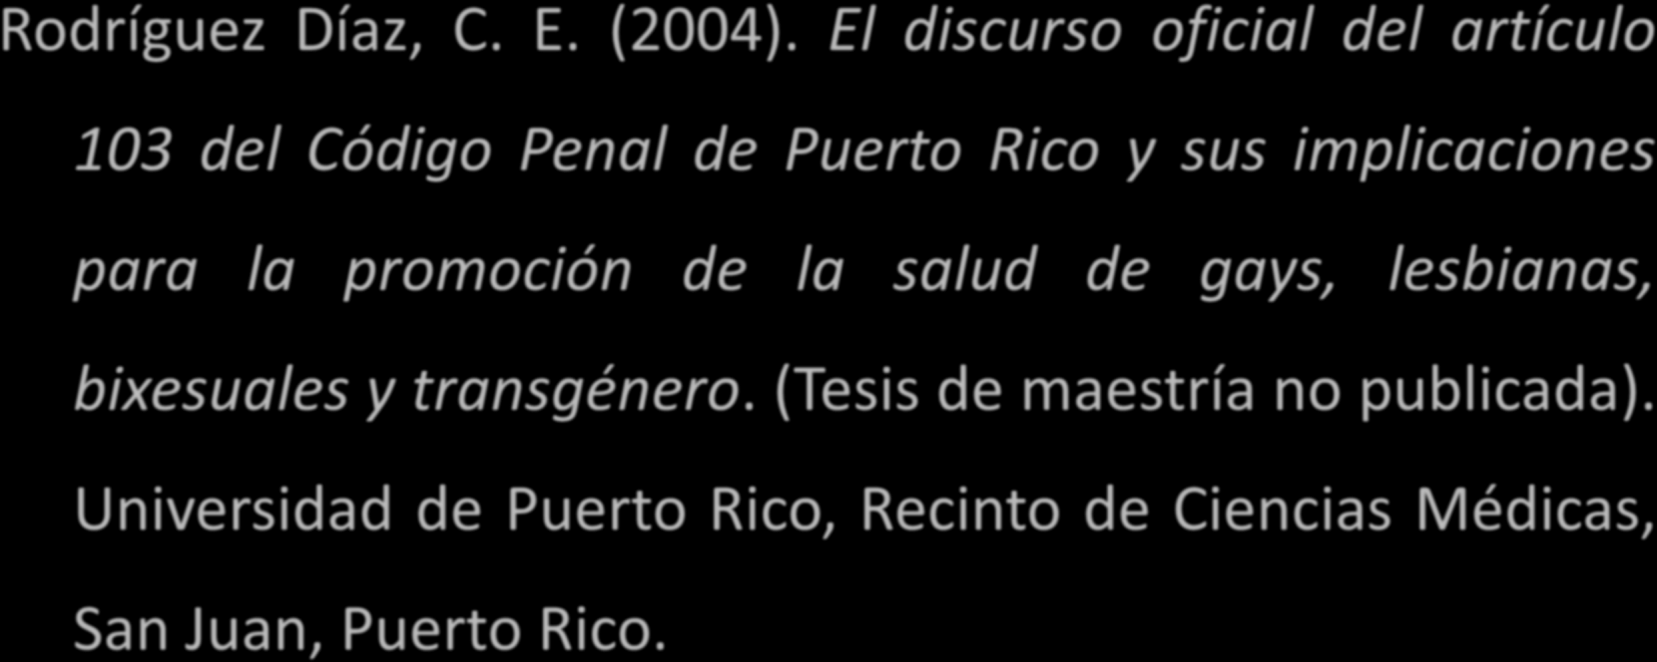 maestría no publicada). Nombre de la institución, Localización. Ejemplo de una tesis no publicada Rodríguez Díaz, C. E. (2004).